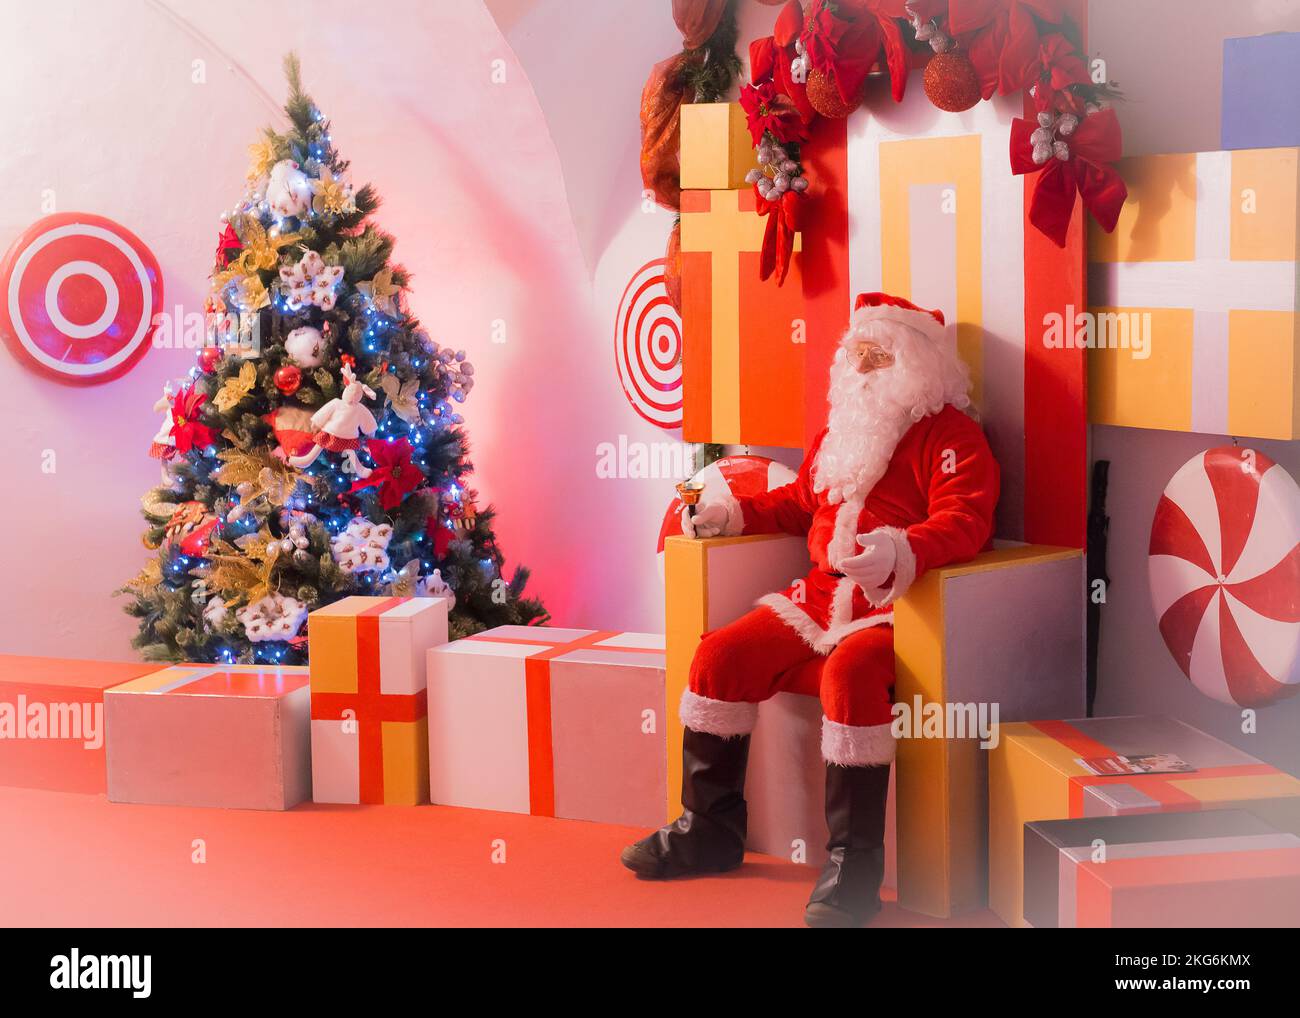 Ambiente mágico en la Navidad con Santa Claus Foto de stock